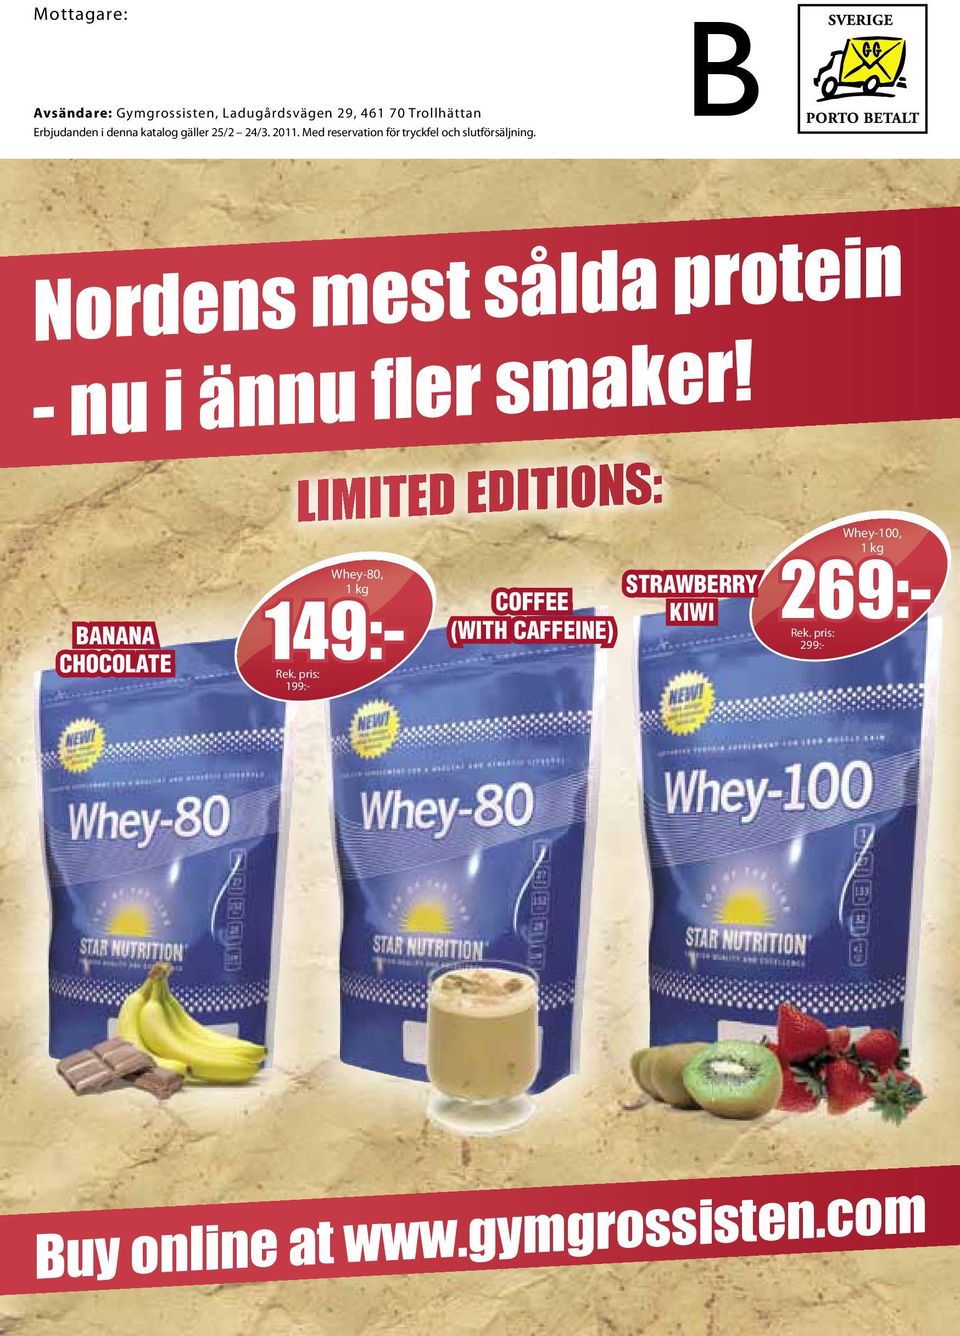 Nordens mest sålda protein - nu i ännu fler smaker!